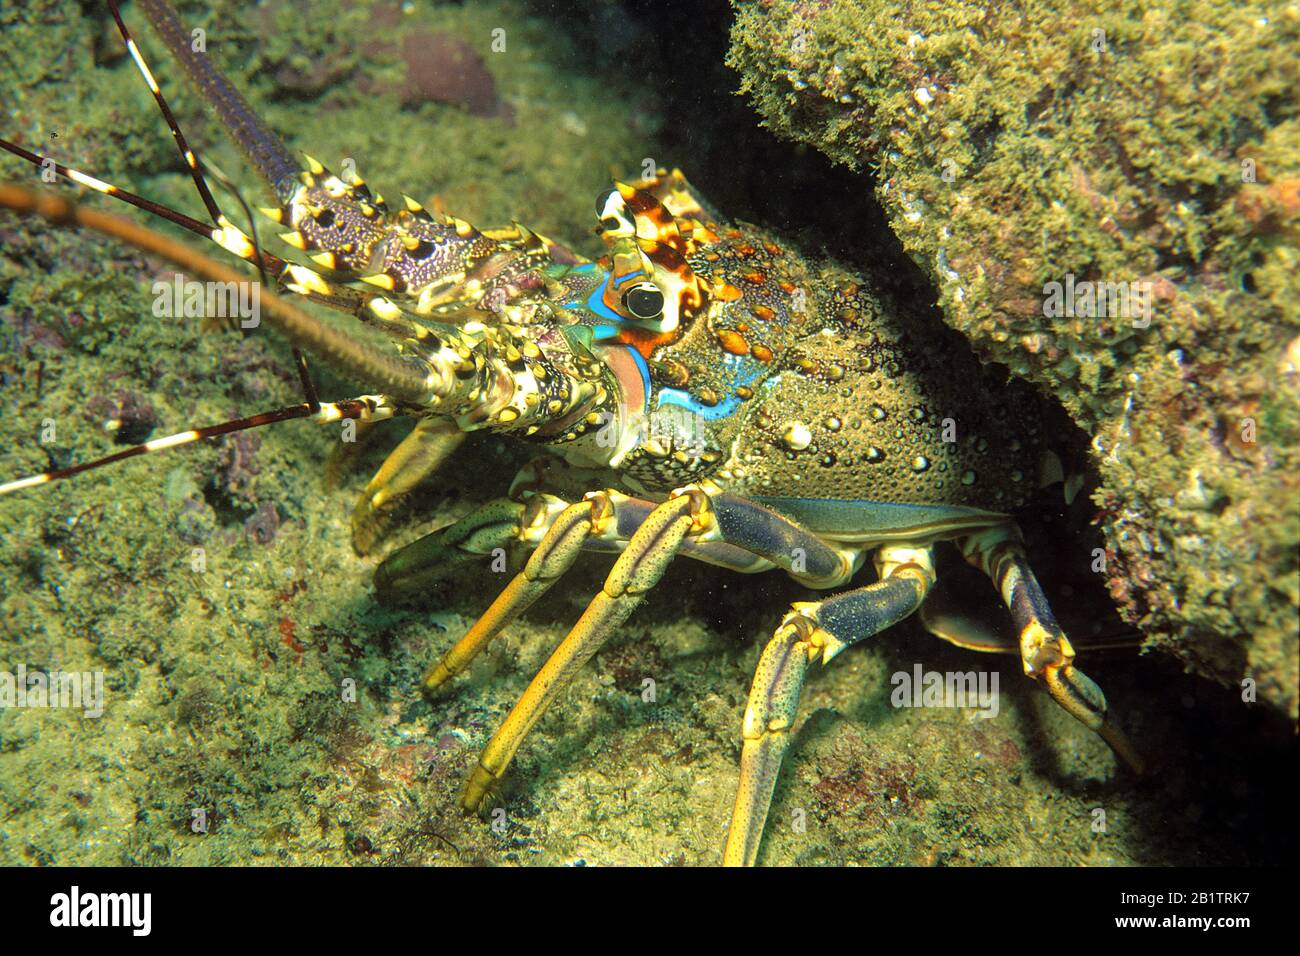 Langouste pétondée (Panulirus homarus) se cachant sous un corail, Muscat, Oman Banque D'Images